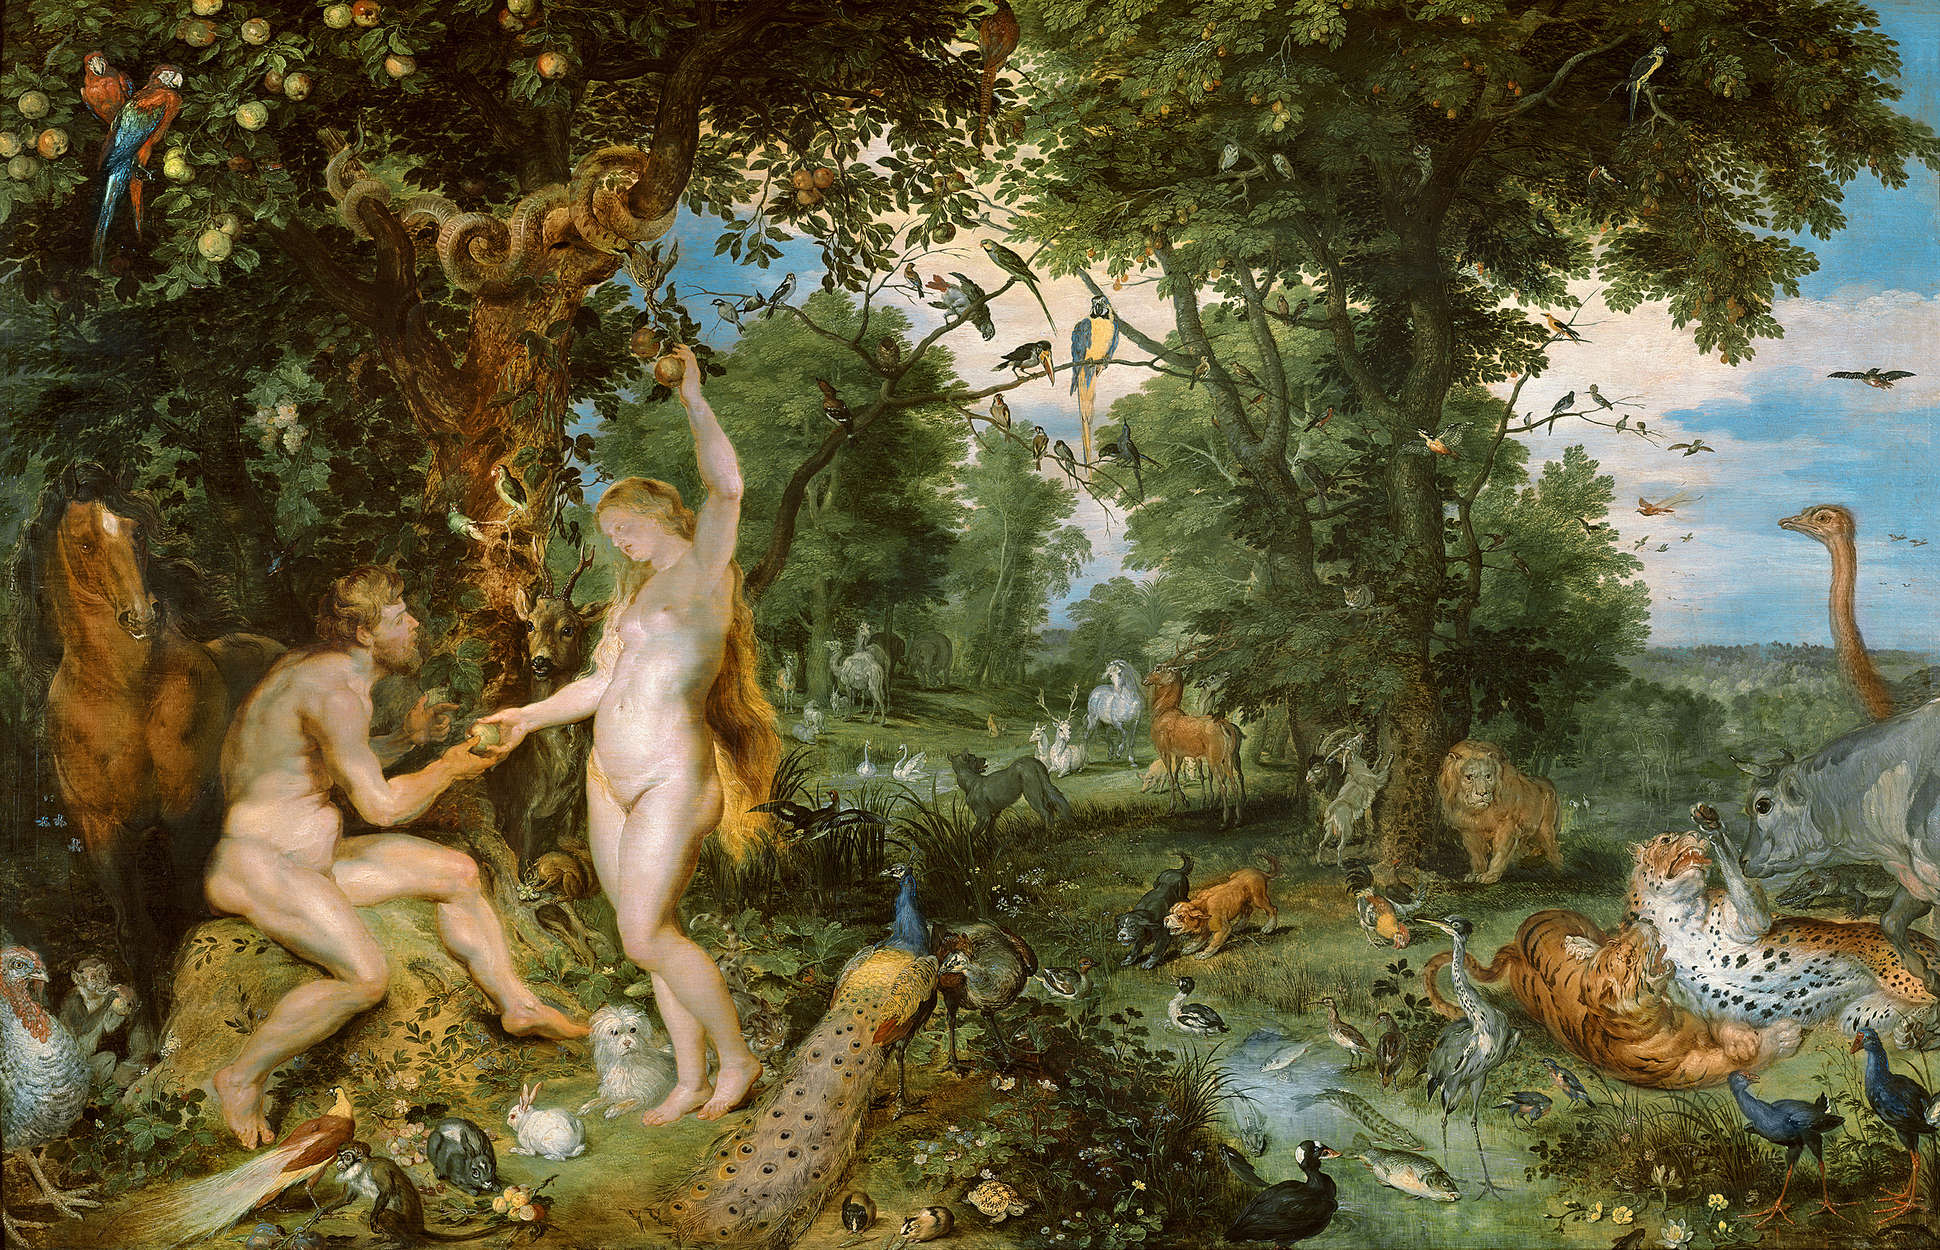             Papier peint "Le jardin d'Eden avec la chute de l'homme" de Pieter Brueghel
        